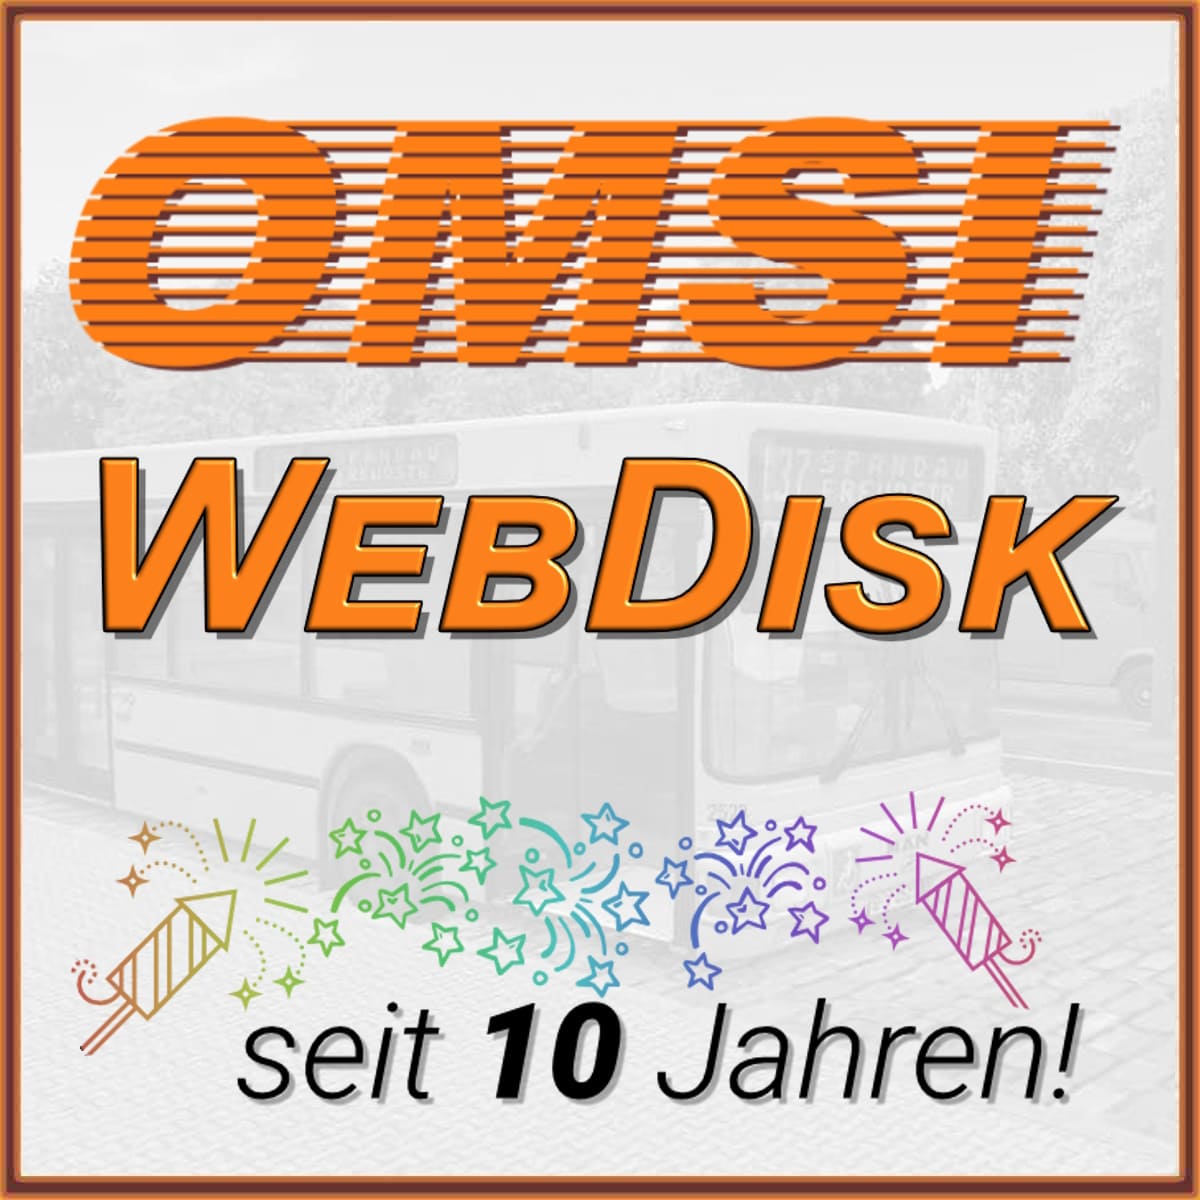 (c) Omsi-webdisk.de